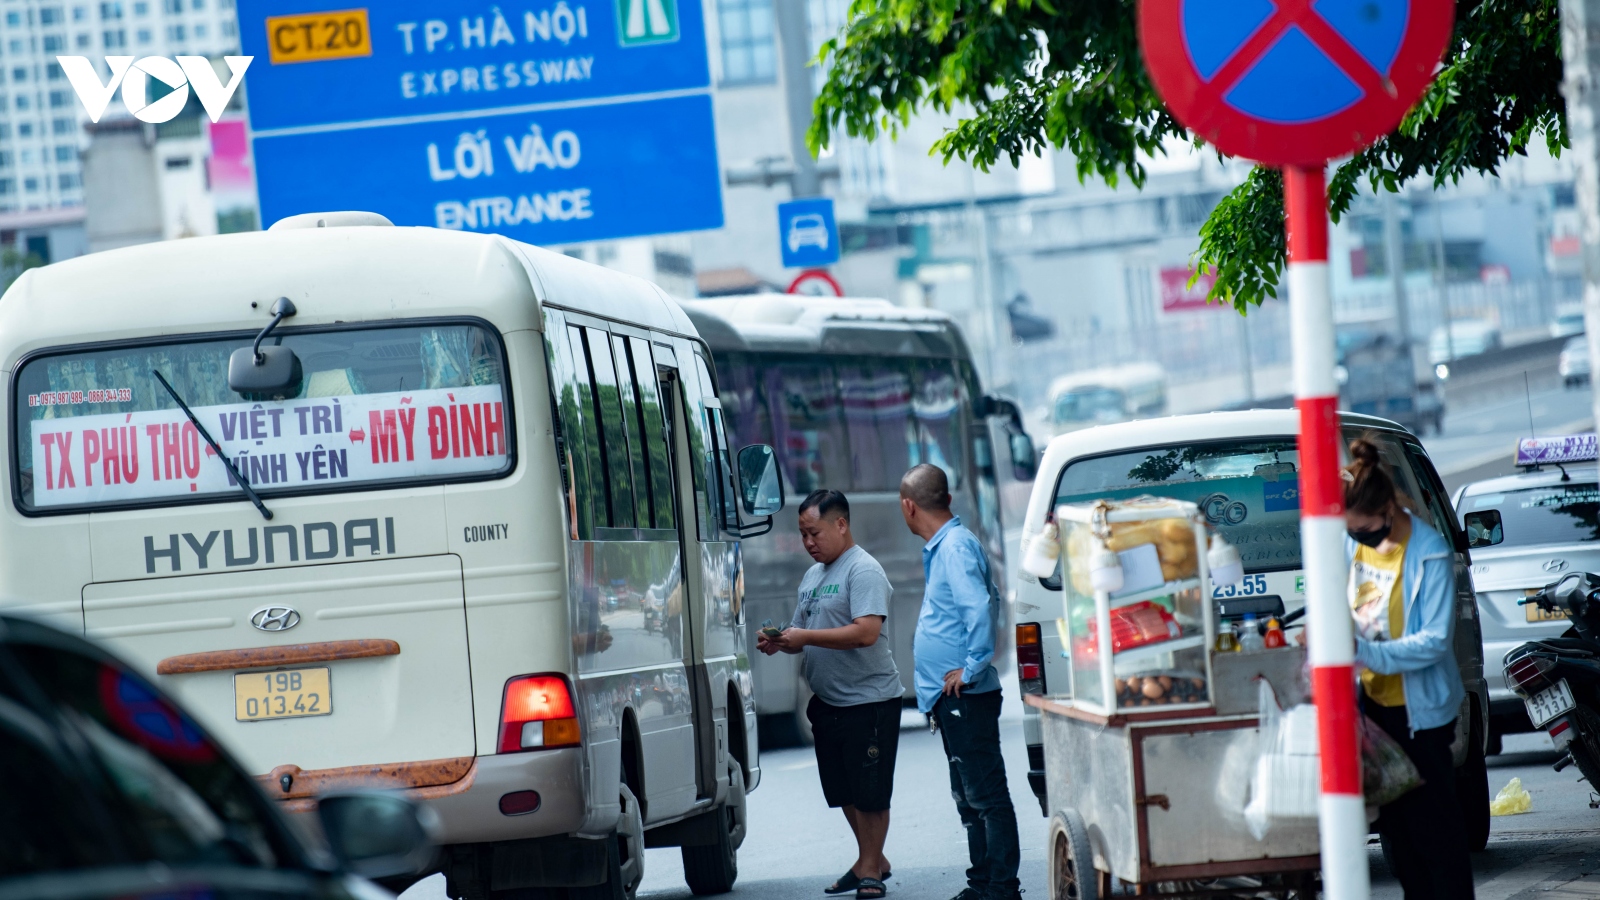 "Bến xe chui" trên đường Phạm Hùng: Cơ quan chức năng ở đâu?